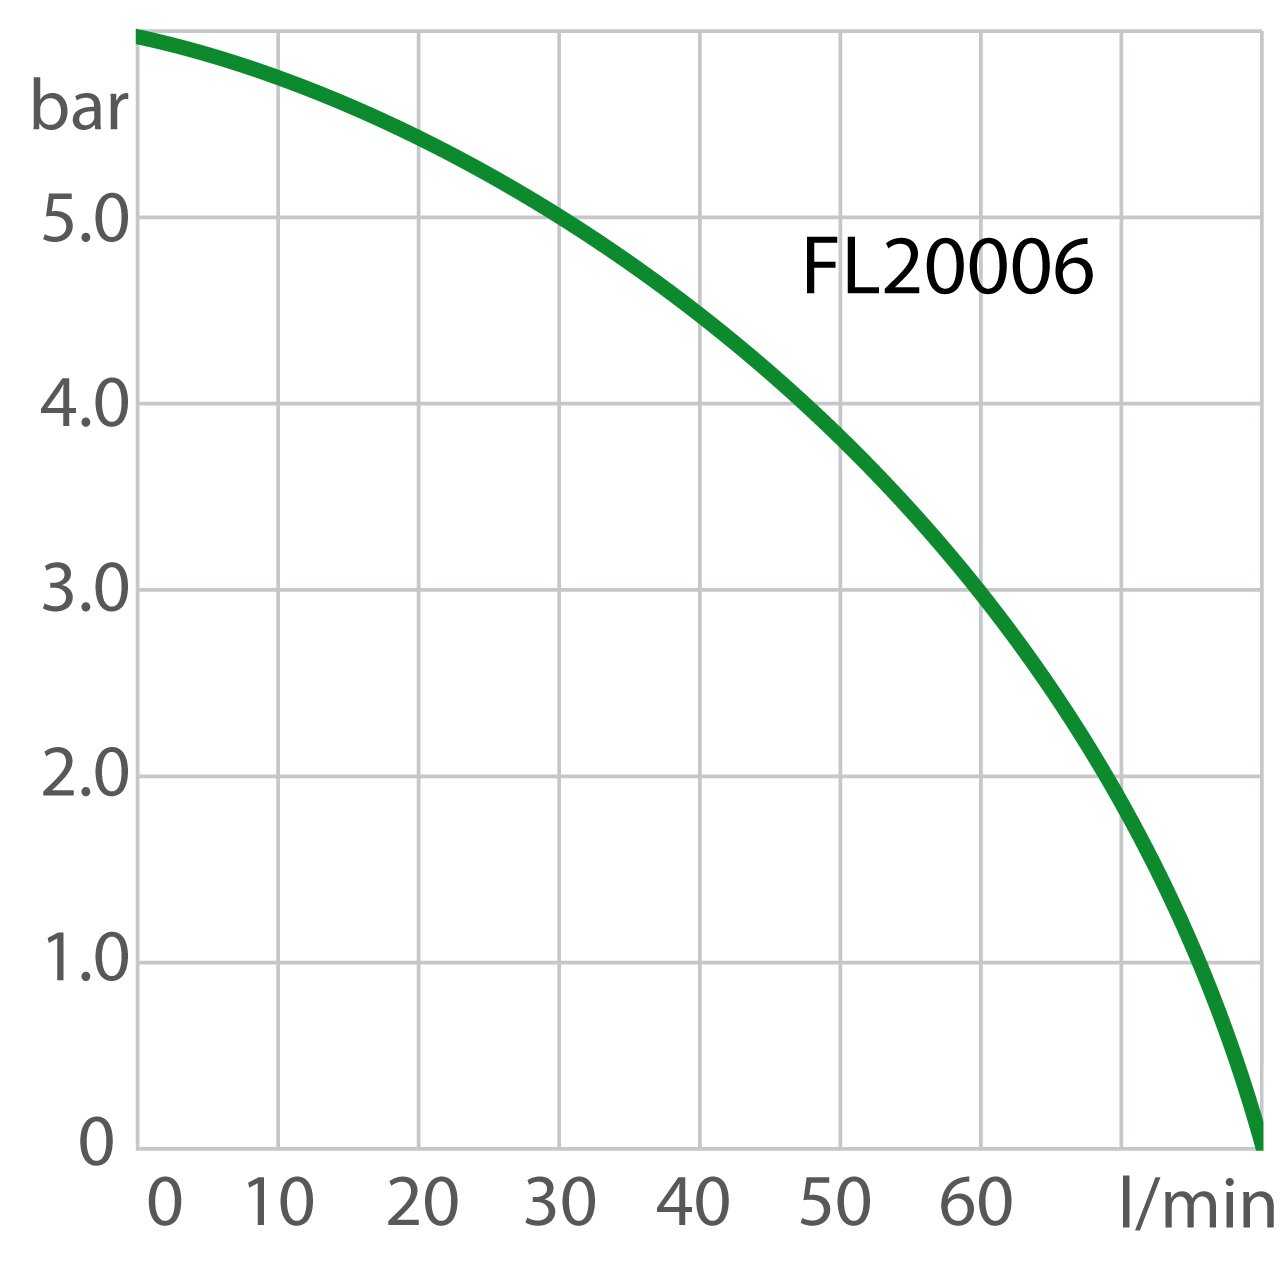 Puissance de la pompe du recirculating cooler FL20006